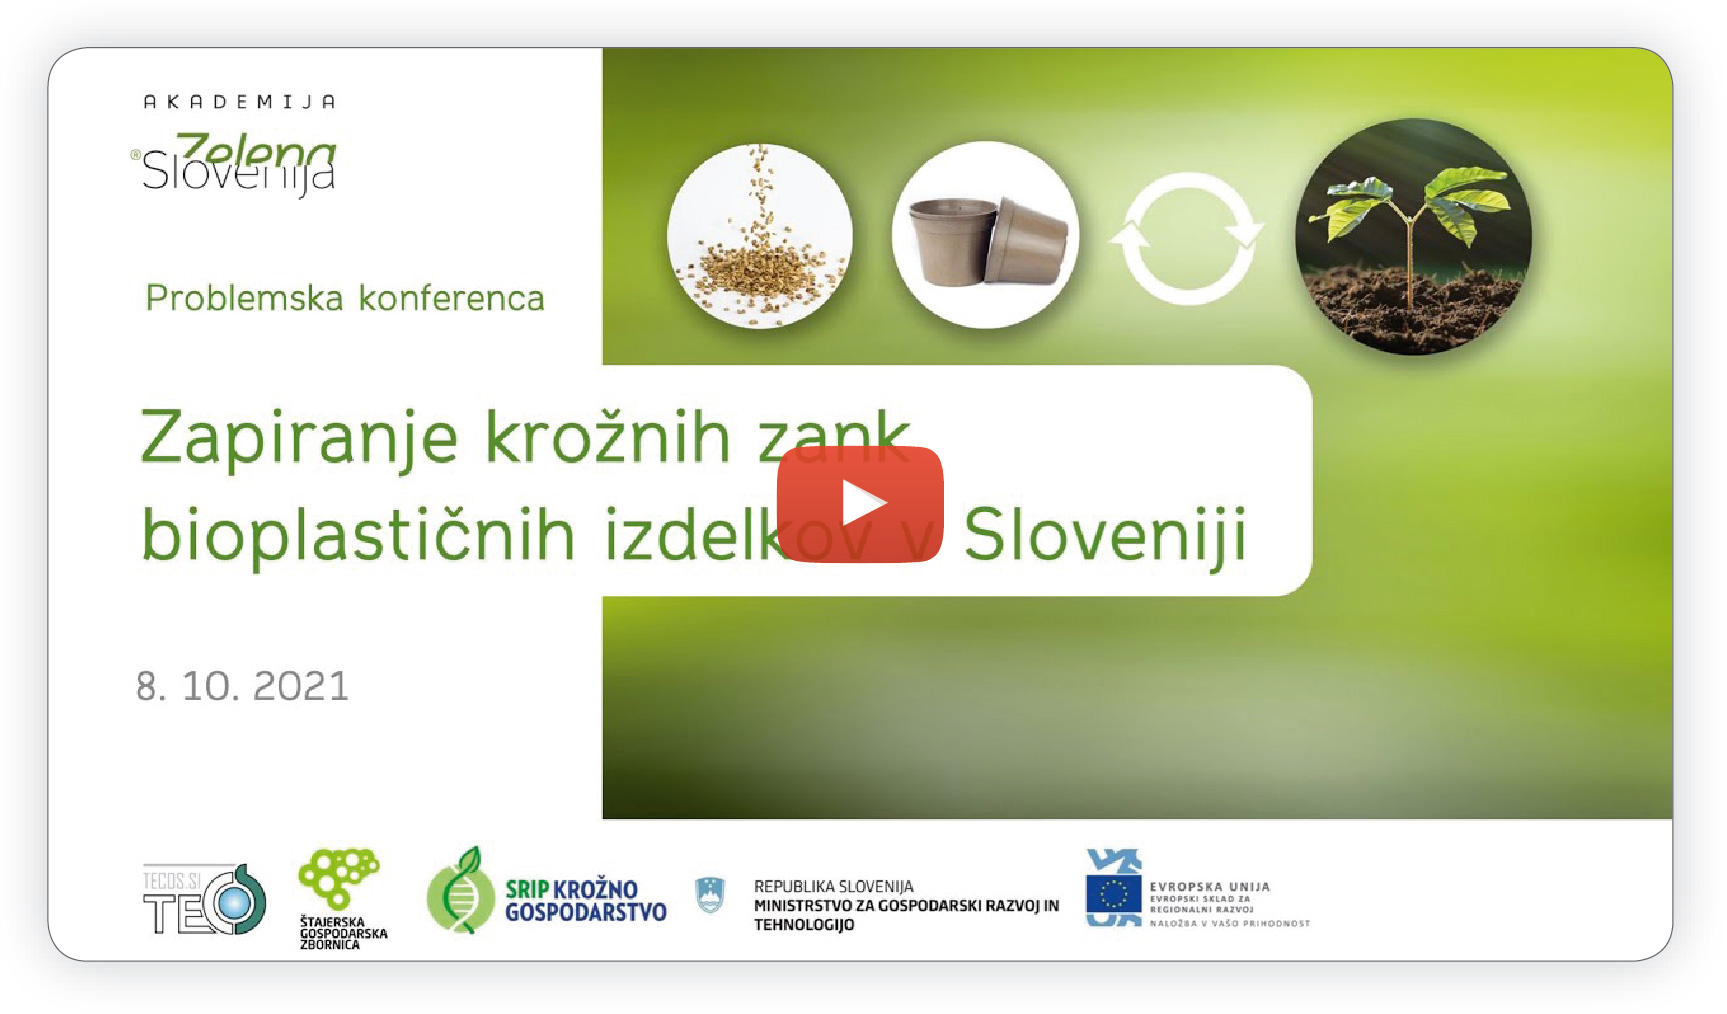 Posnetek spletne problemske konference »Zapiranje krožnih zank bioplastičnih izdelkov v Sloveniji« si lahko ogledate na https://www.youtube.com/watch?v=wCV8Kfwjw9w